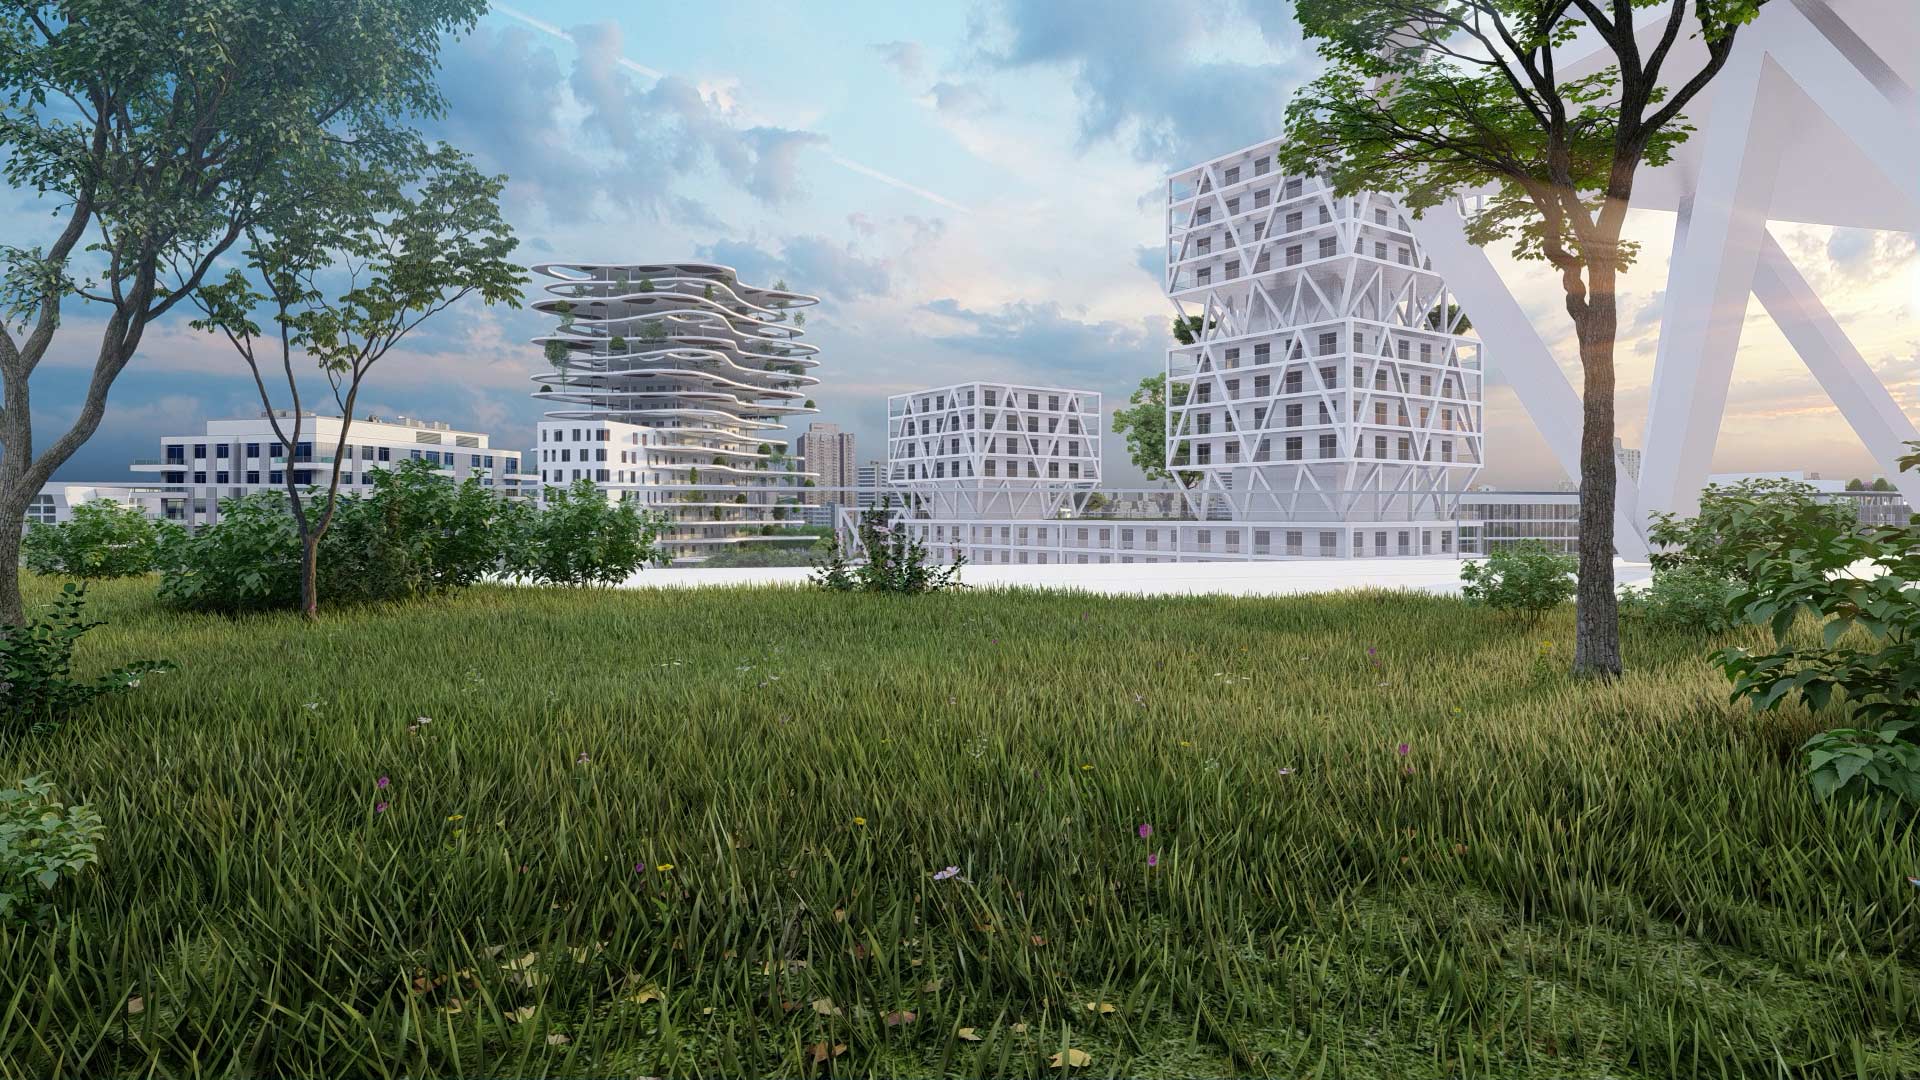 Architectes-Collectivites-projet-aménagement-urbain-perspective-3D-immeuble-vegetation